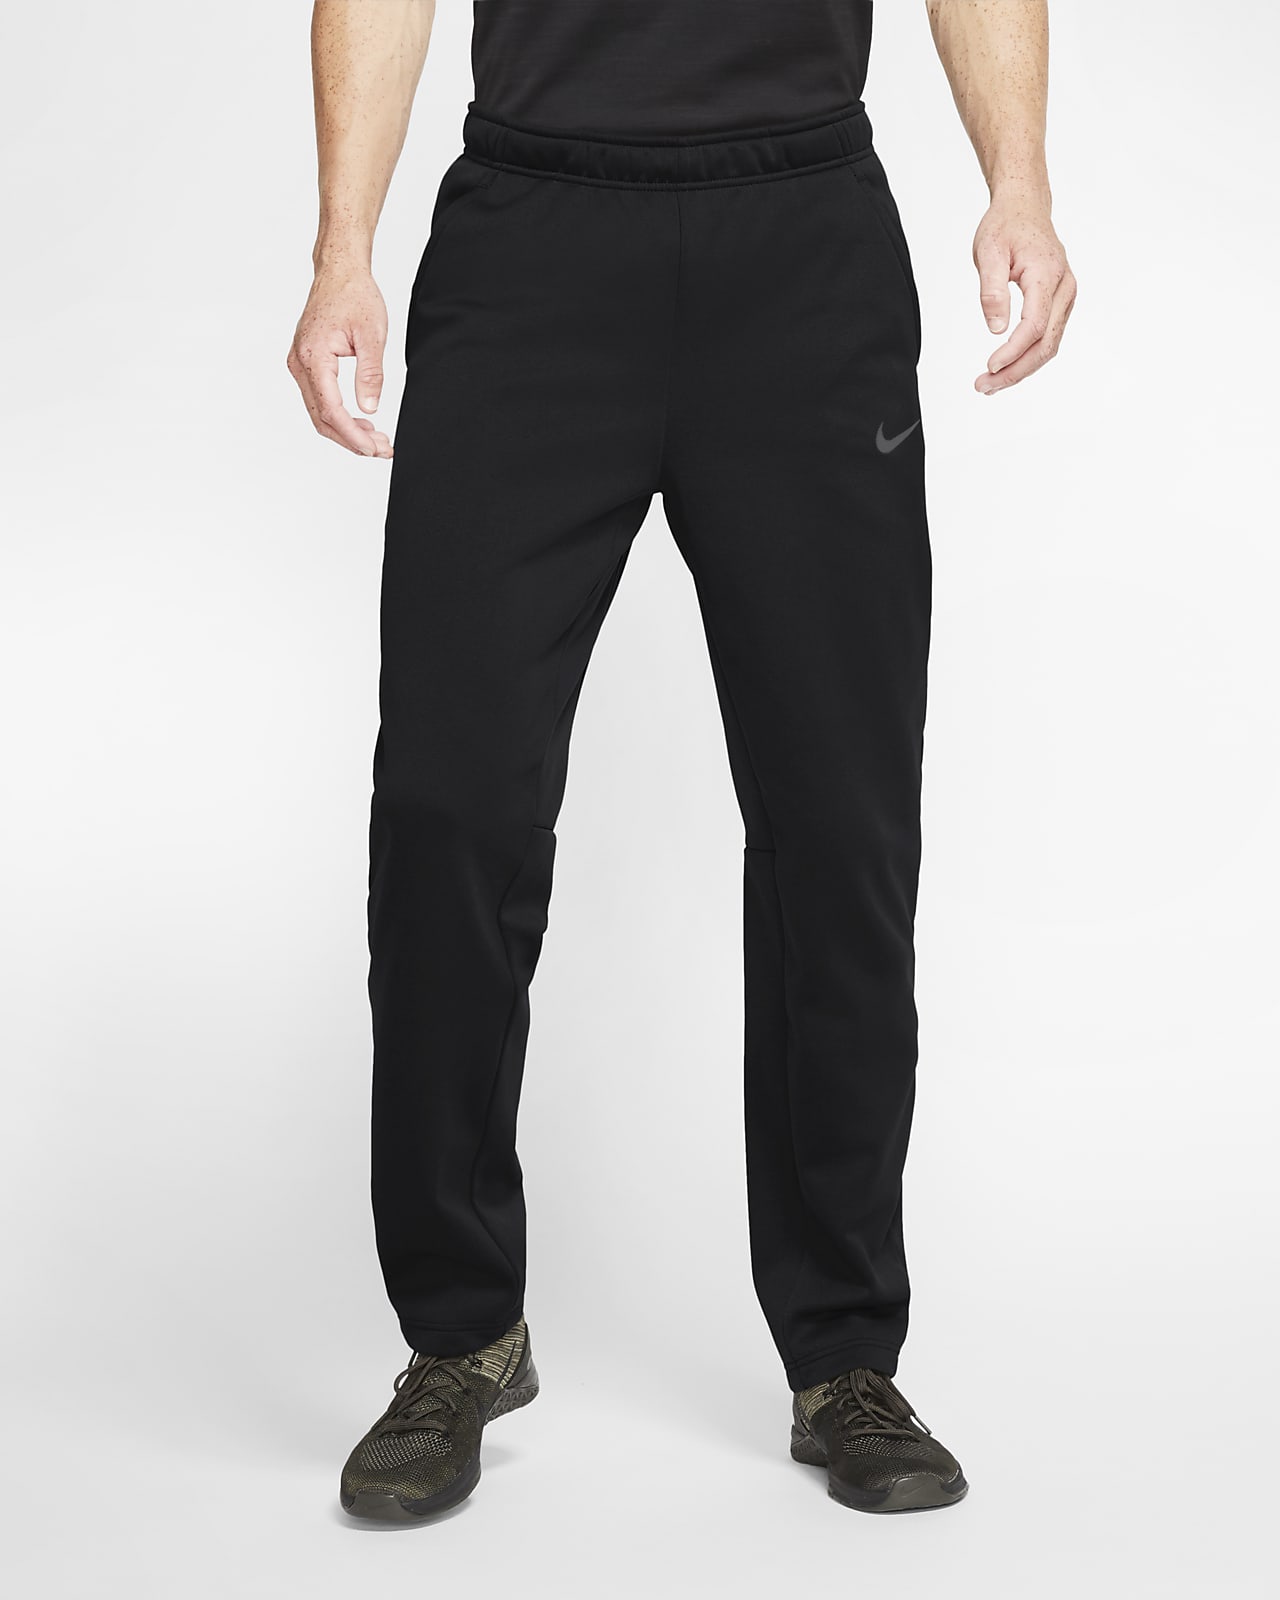  Nike Men's TF Pant Regular (Anthracite/White, Medium